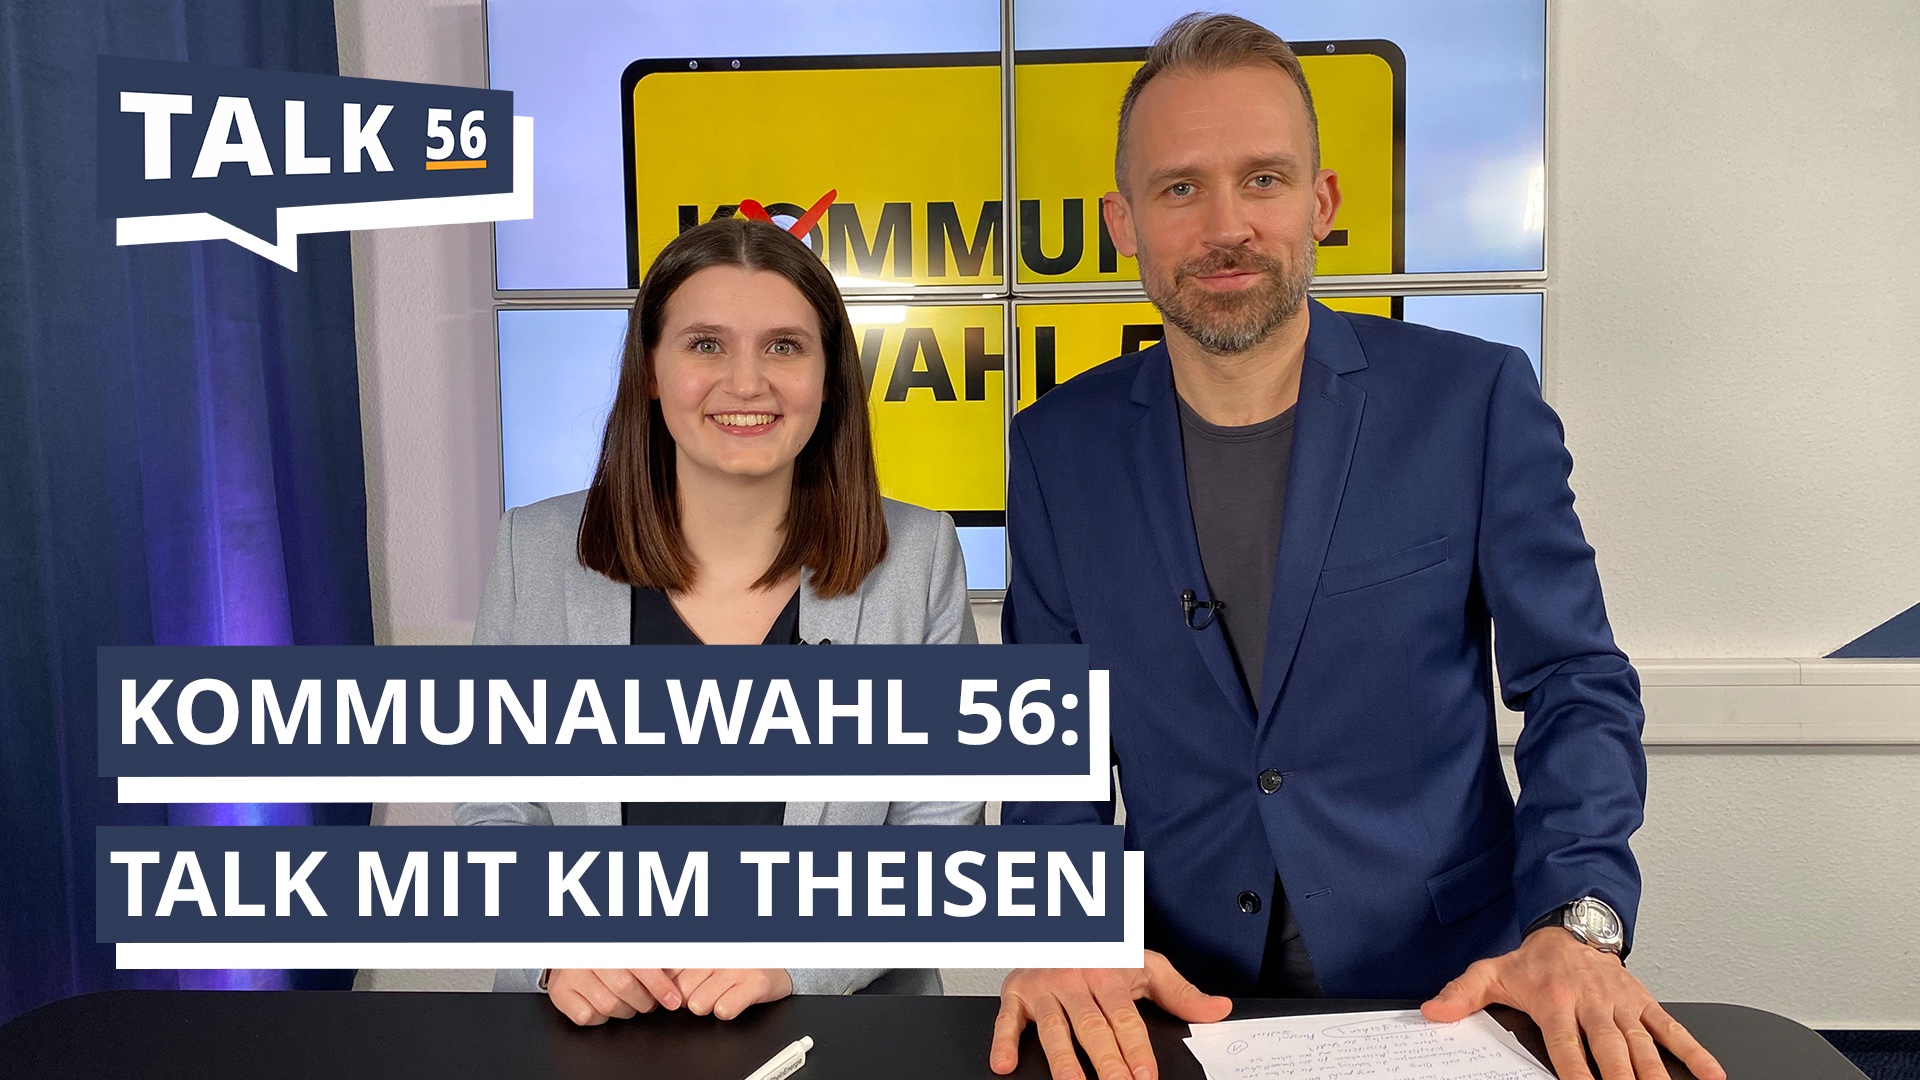 Kommunalwahl 56: Talk mit Kim Theisen